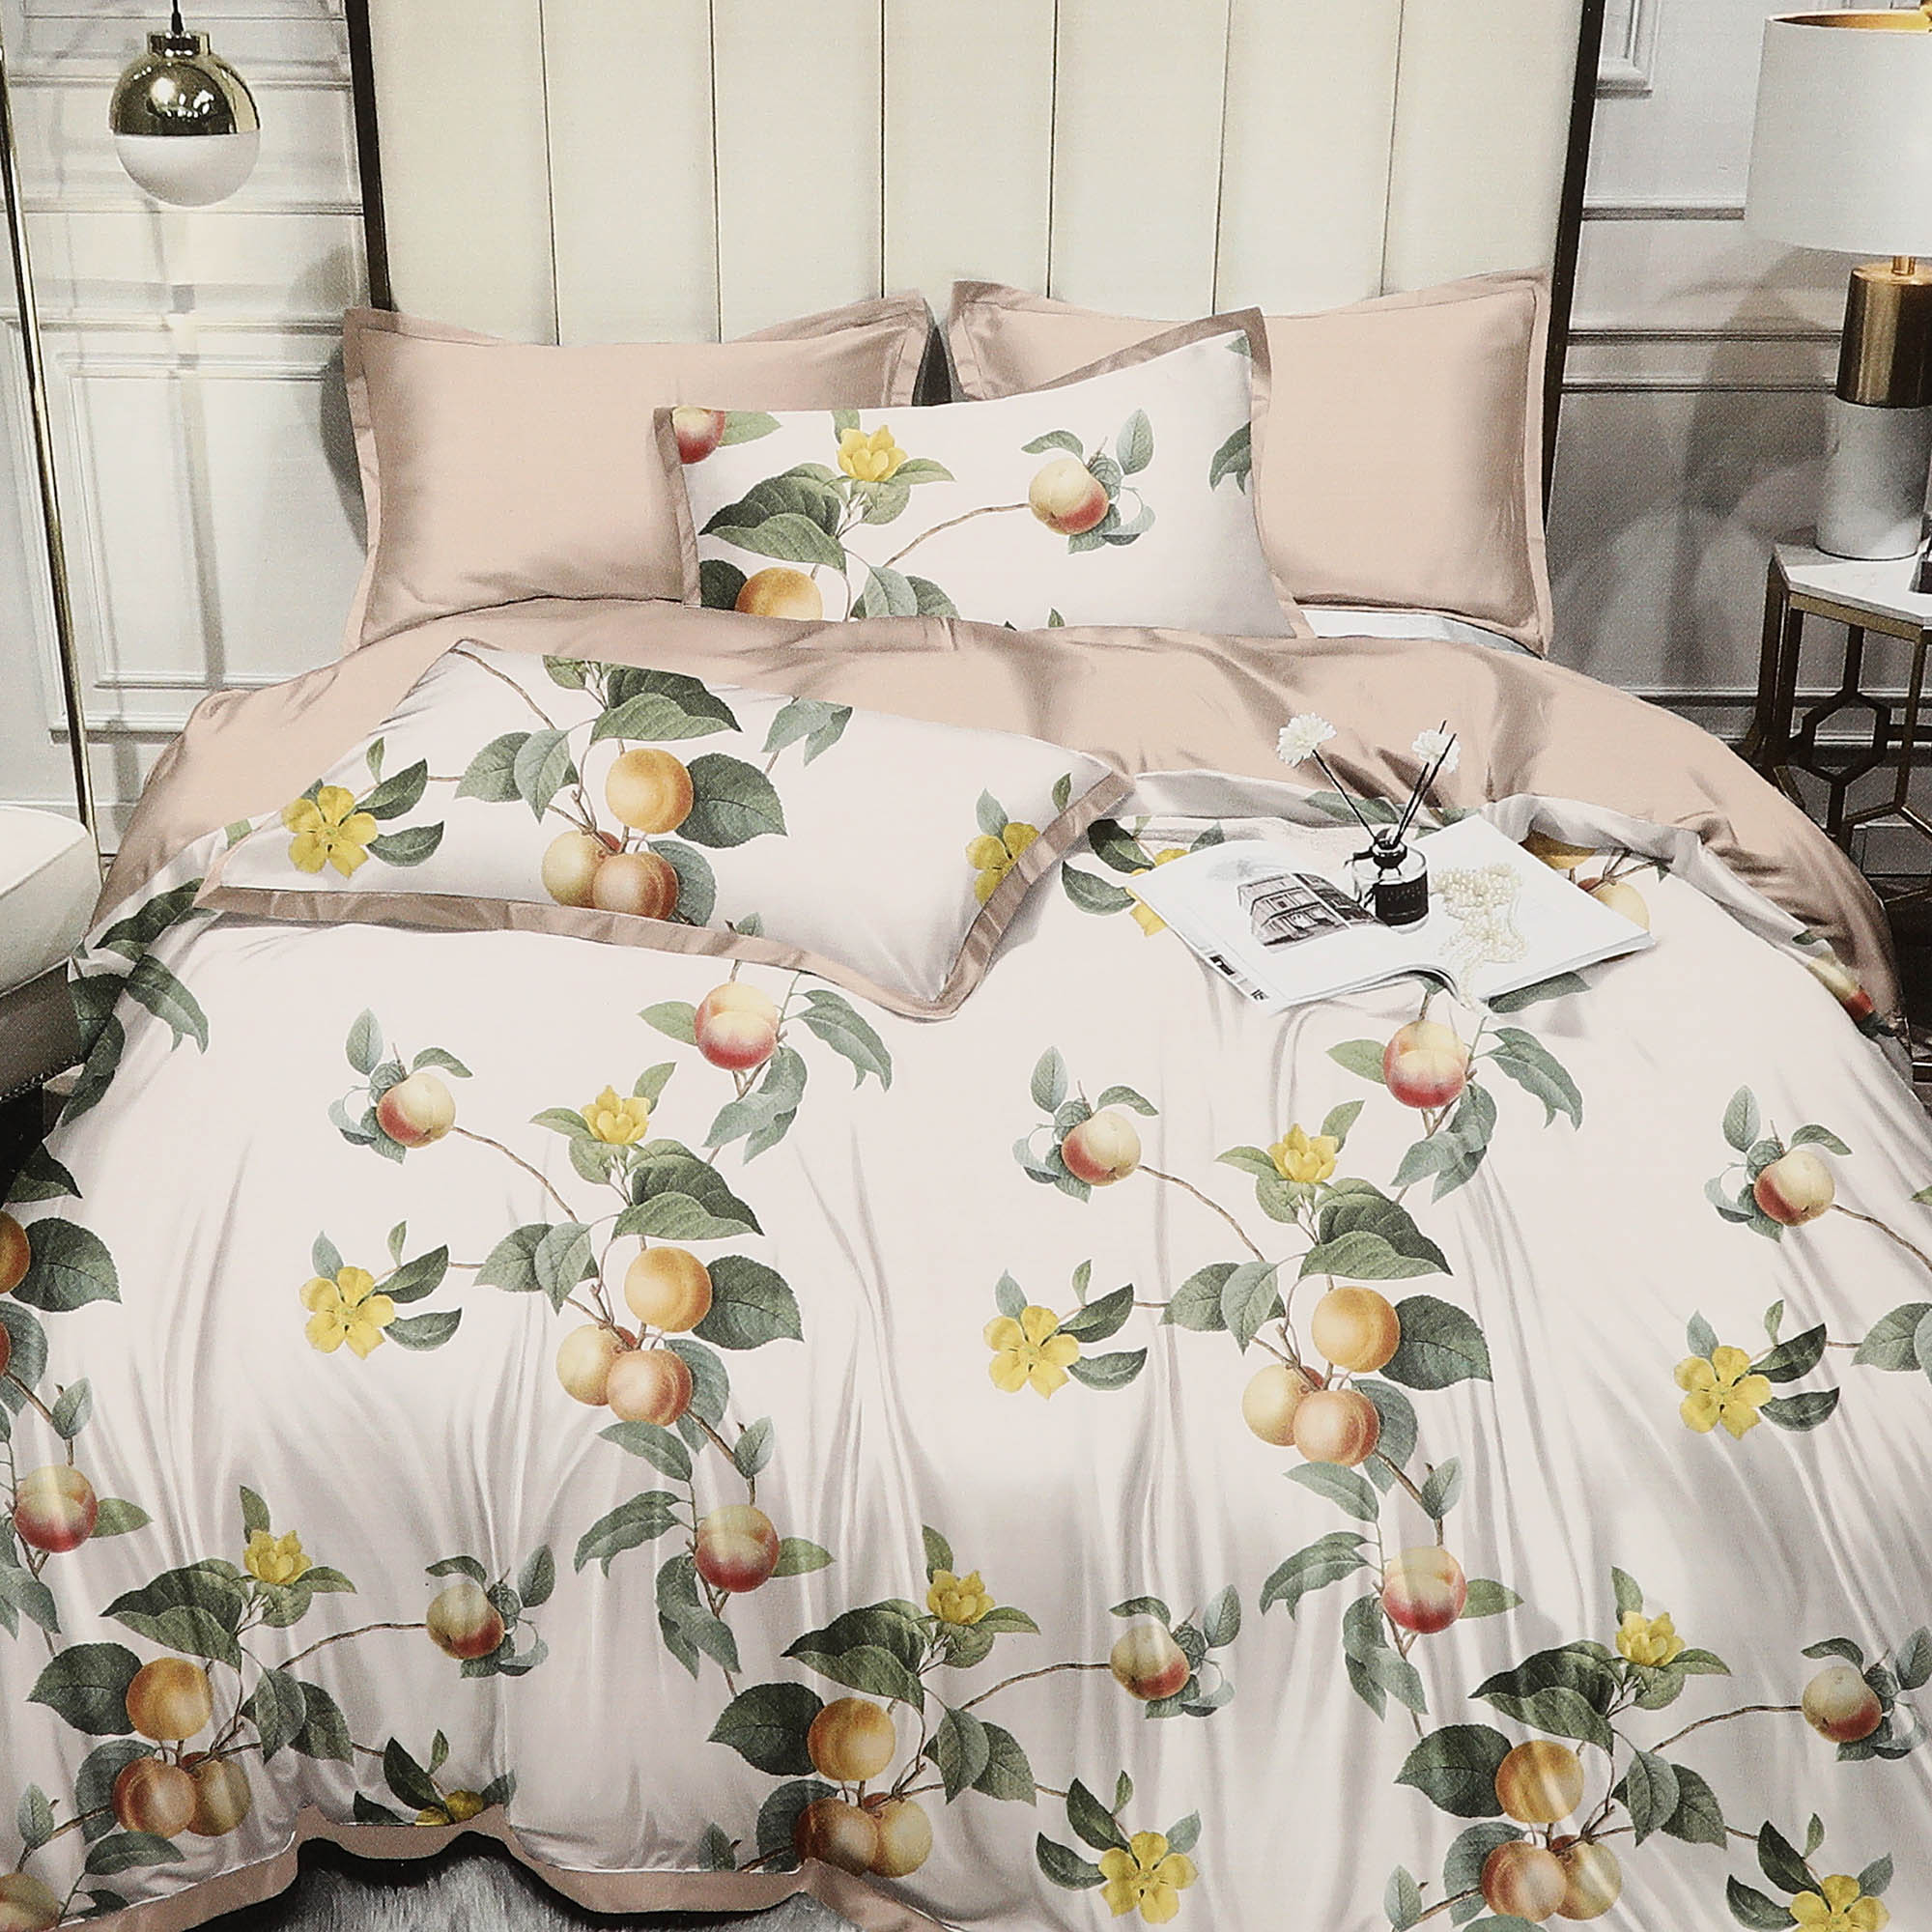 Комплект постельного белья Wonne Traum Elegance Apple garden cream Семейный/дуэт комплект для вьющихся растений green apple glscl 1 60x180 см